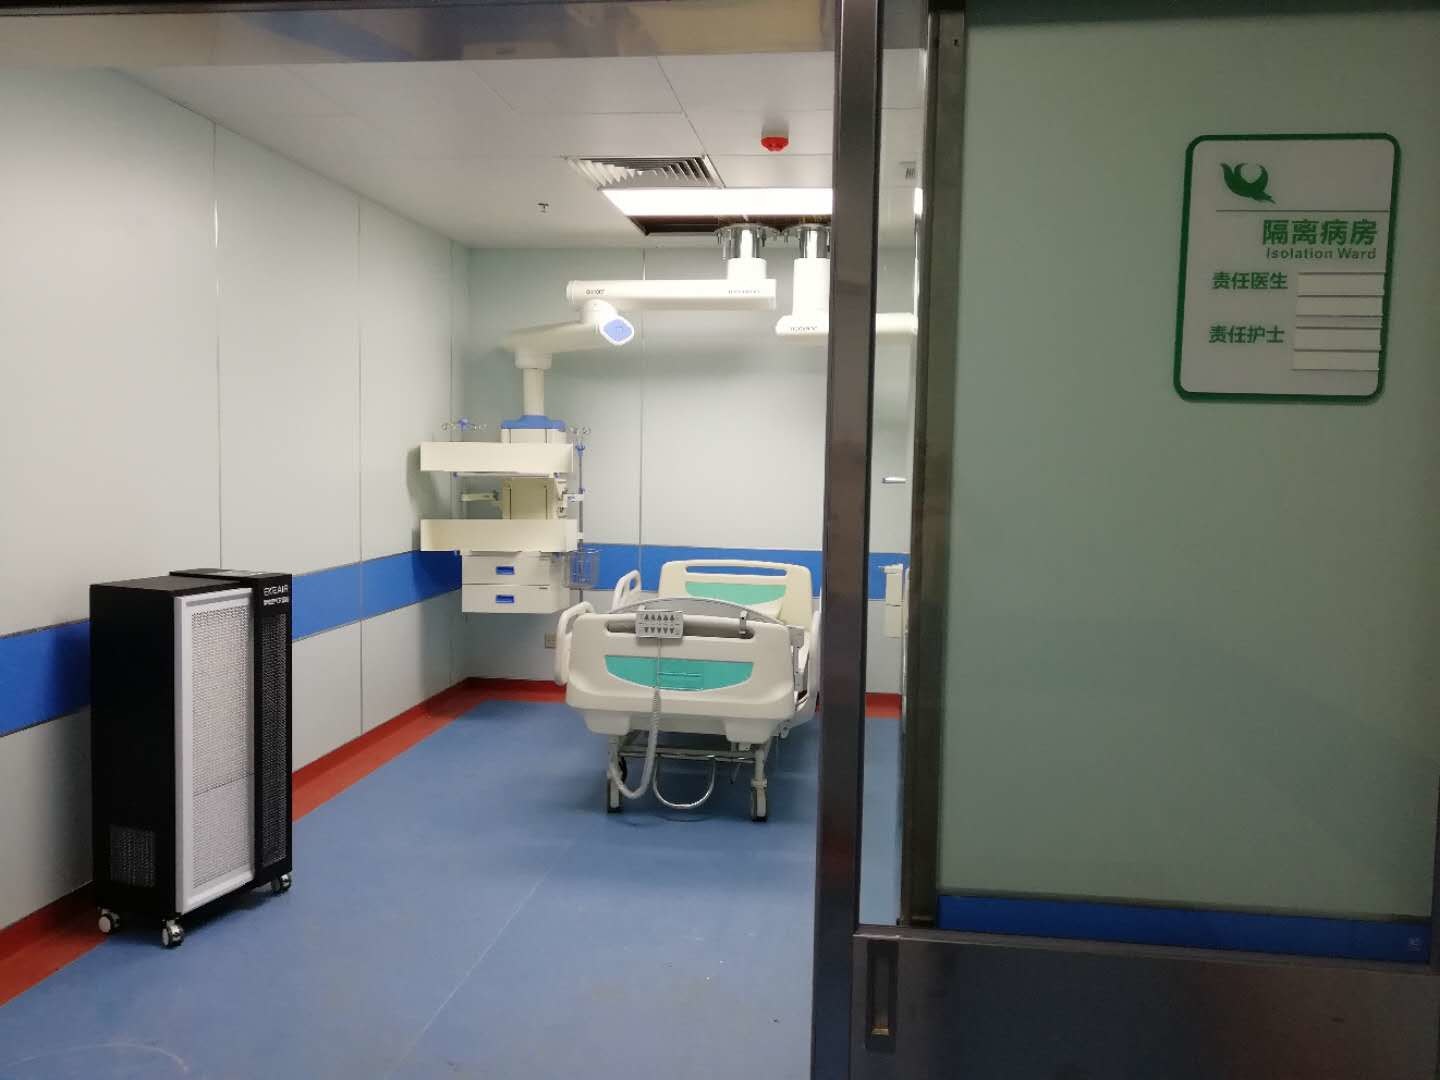 ultimo caso aziendale circa Nuova città universitaria, quarto ospedale dell'università medica dell'Anhui